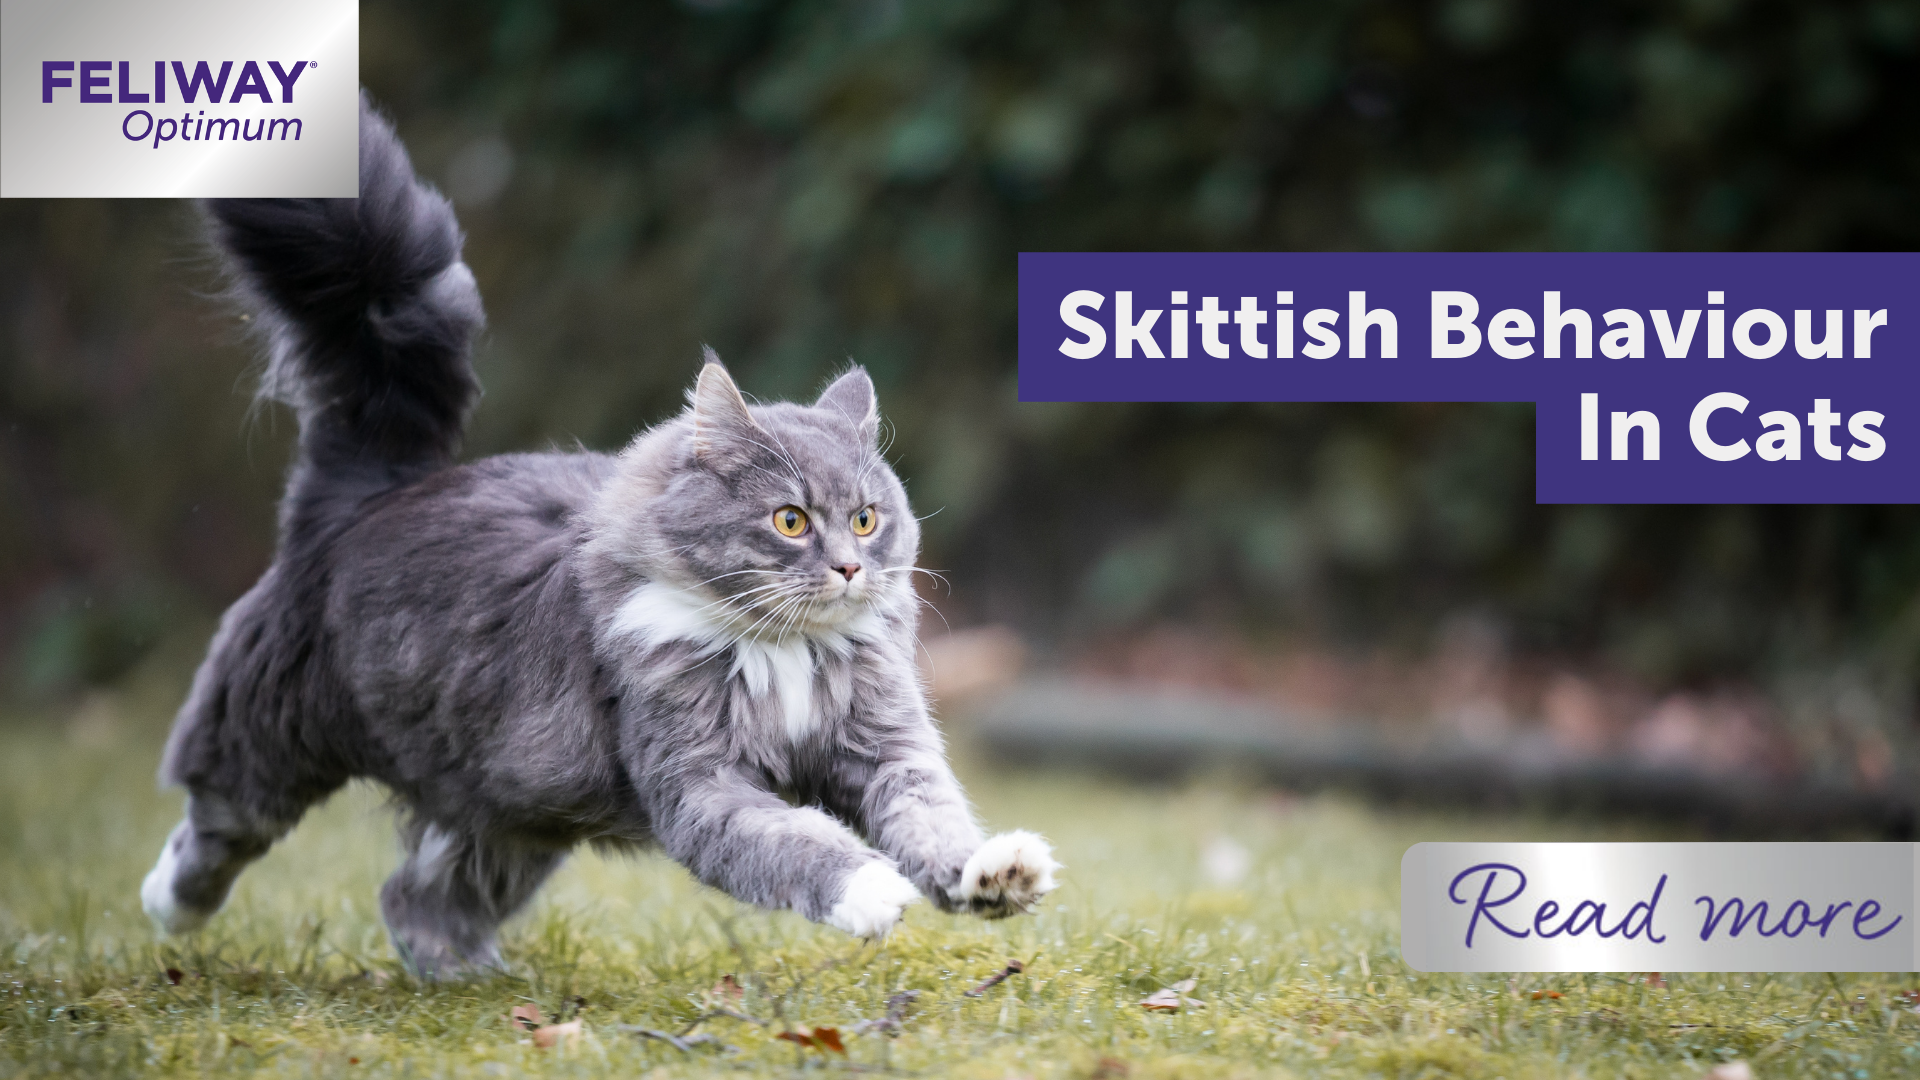 Skittish behaviour in cats